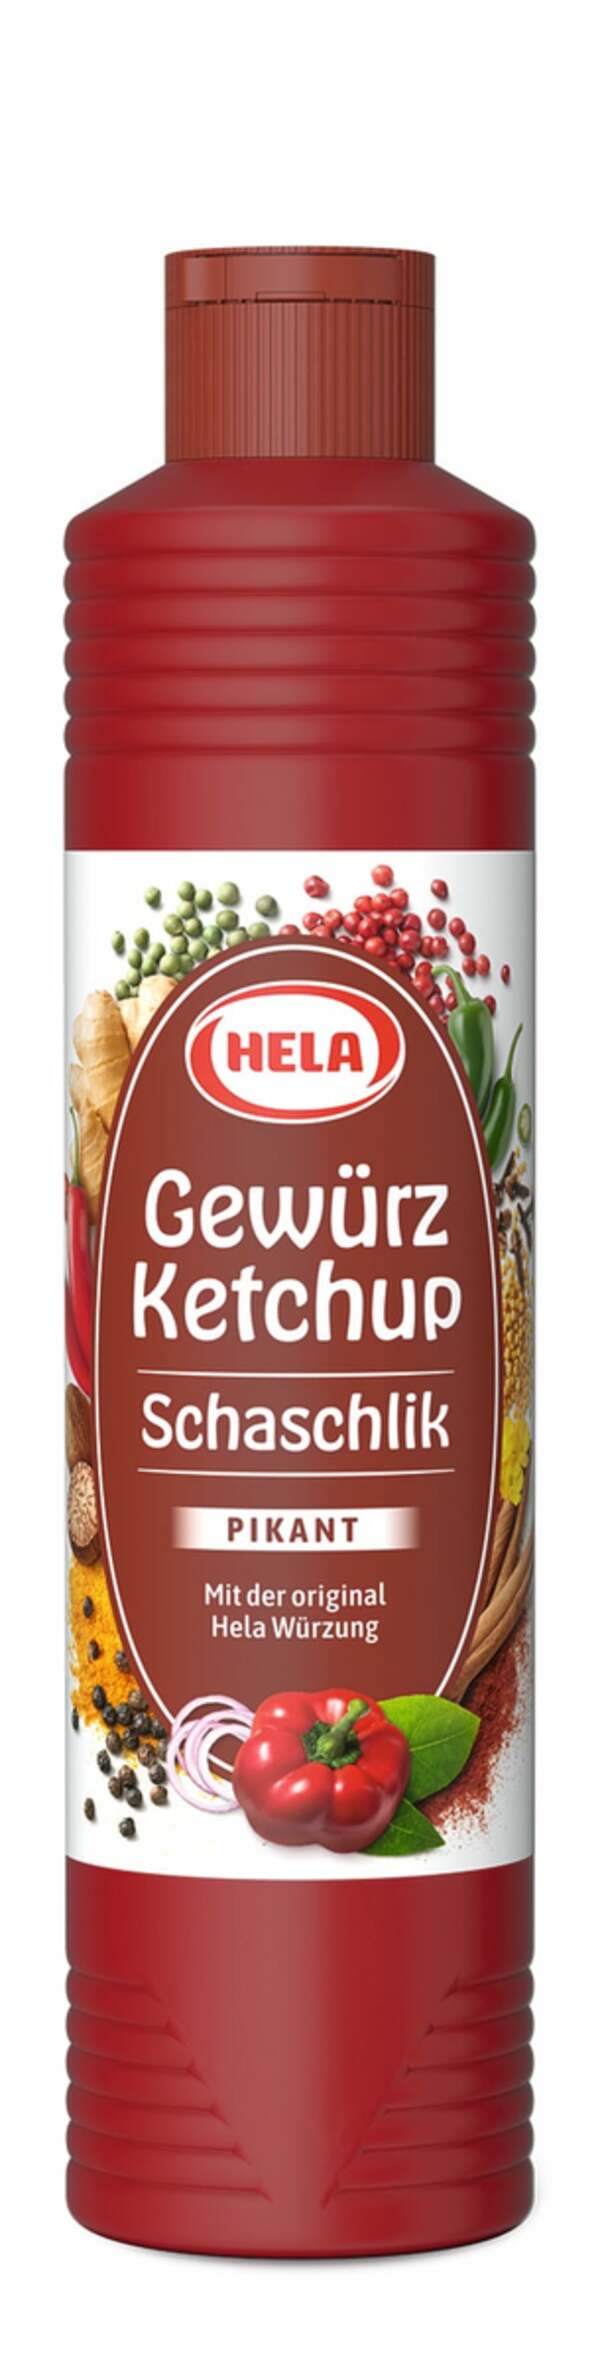 Bild 1 von Gewürz-Ketchup 'Schaschlik' 800ml